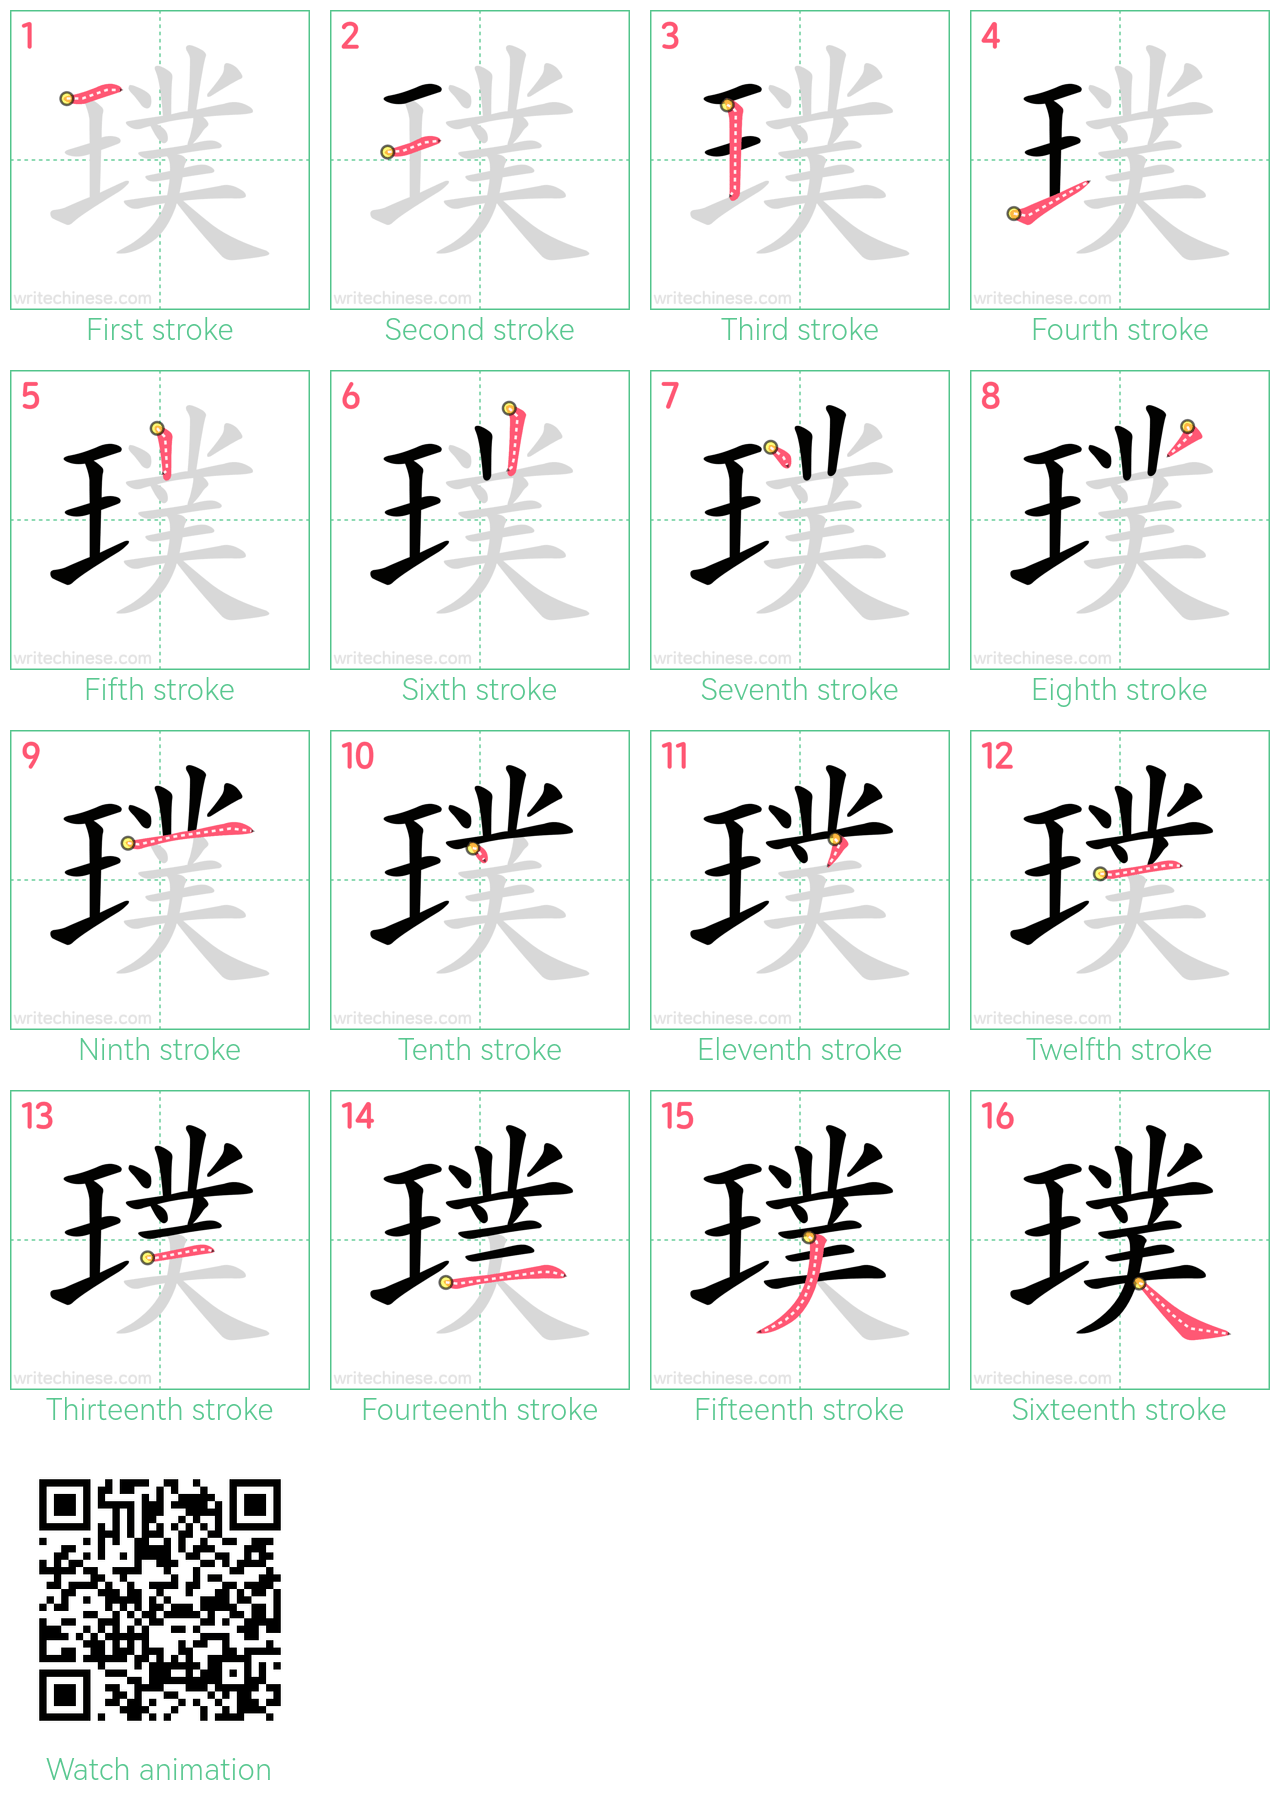 璞 step-by-step stroke order diagrams